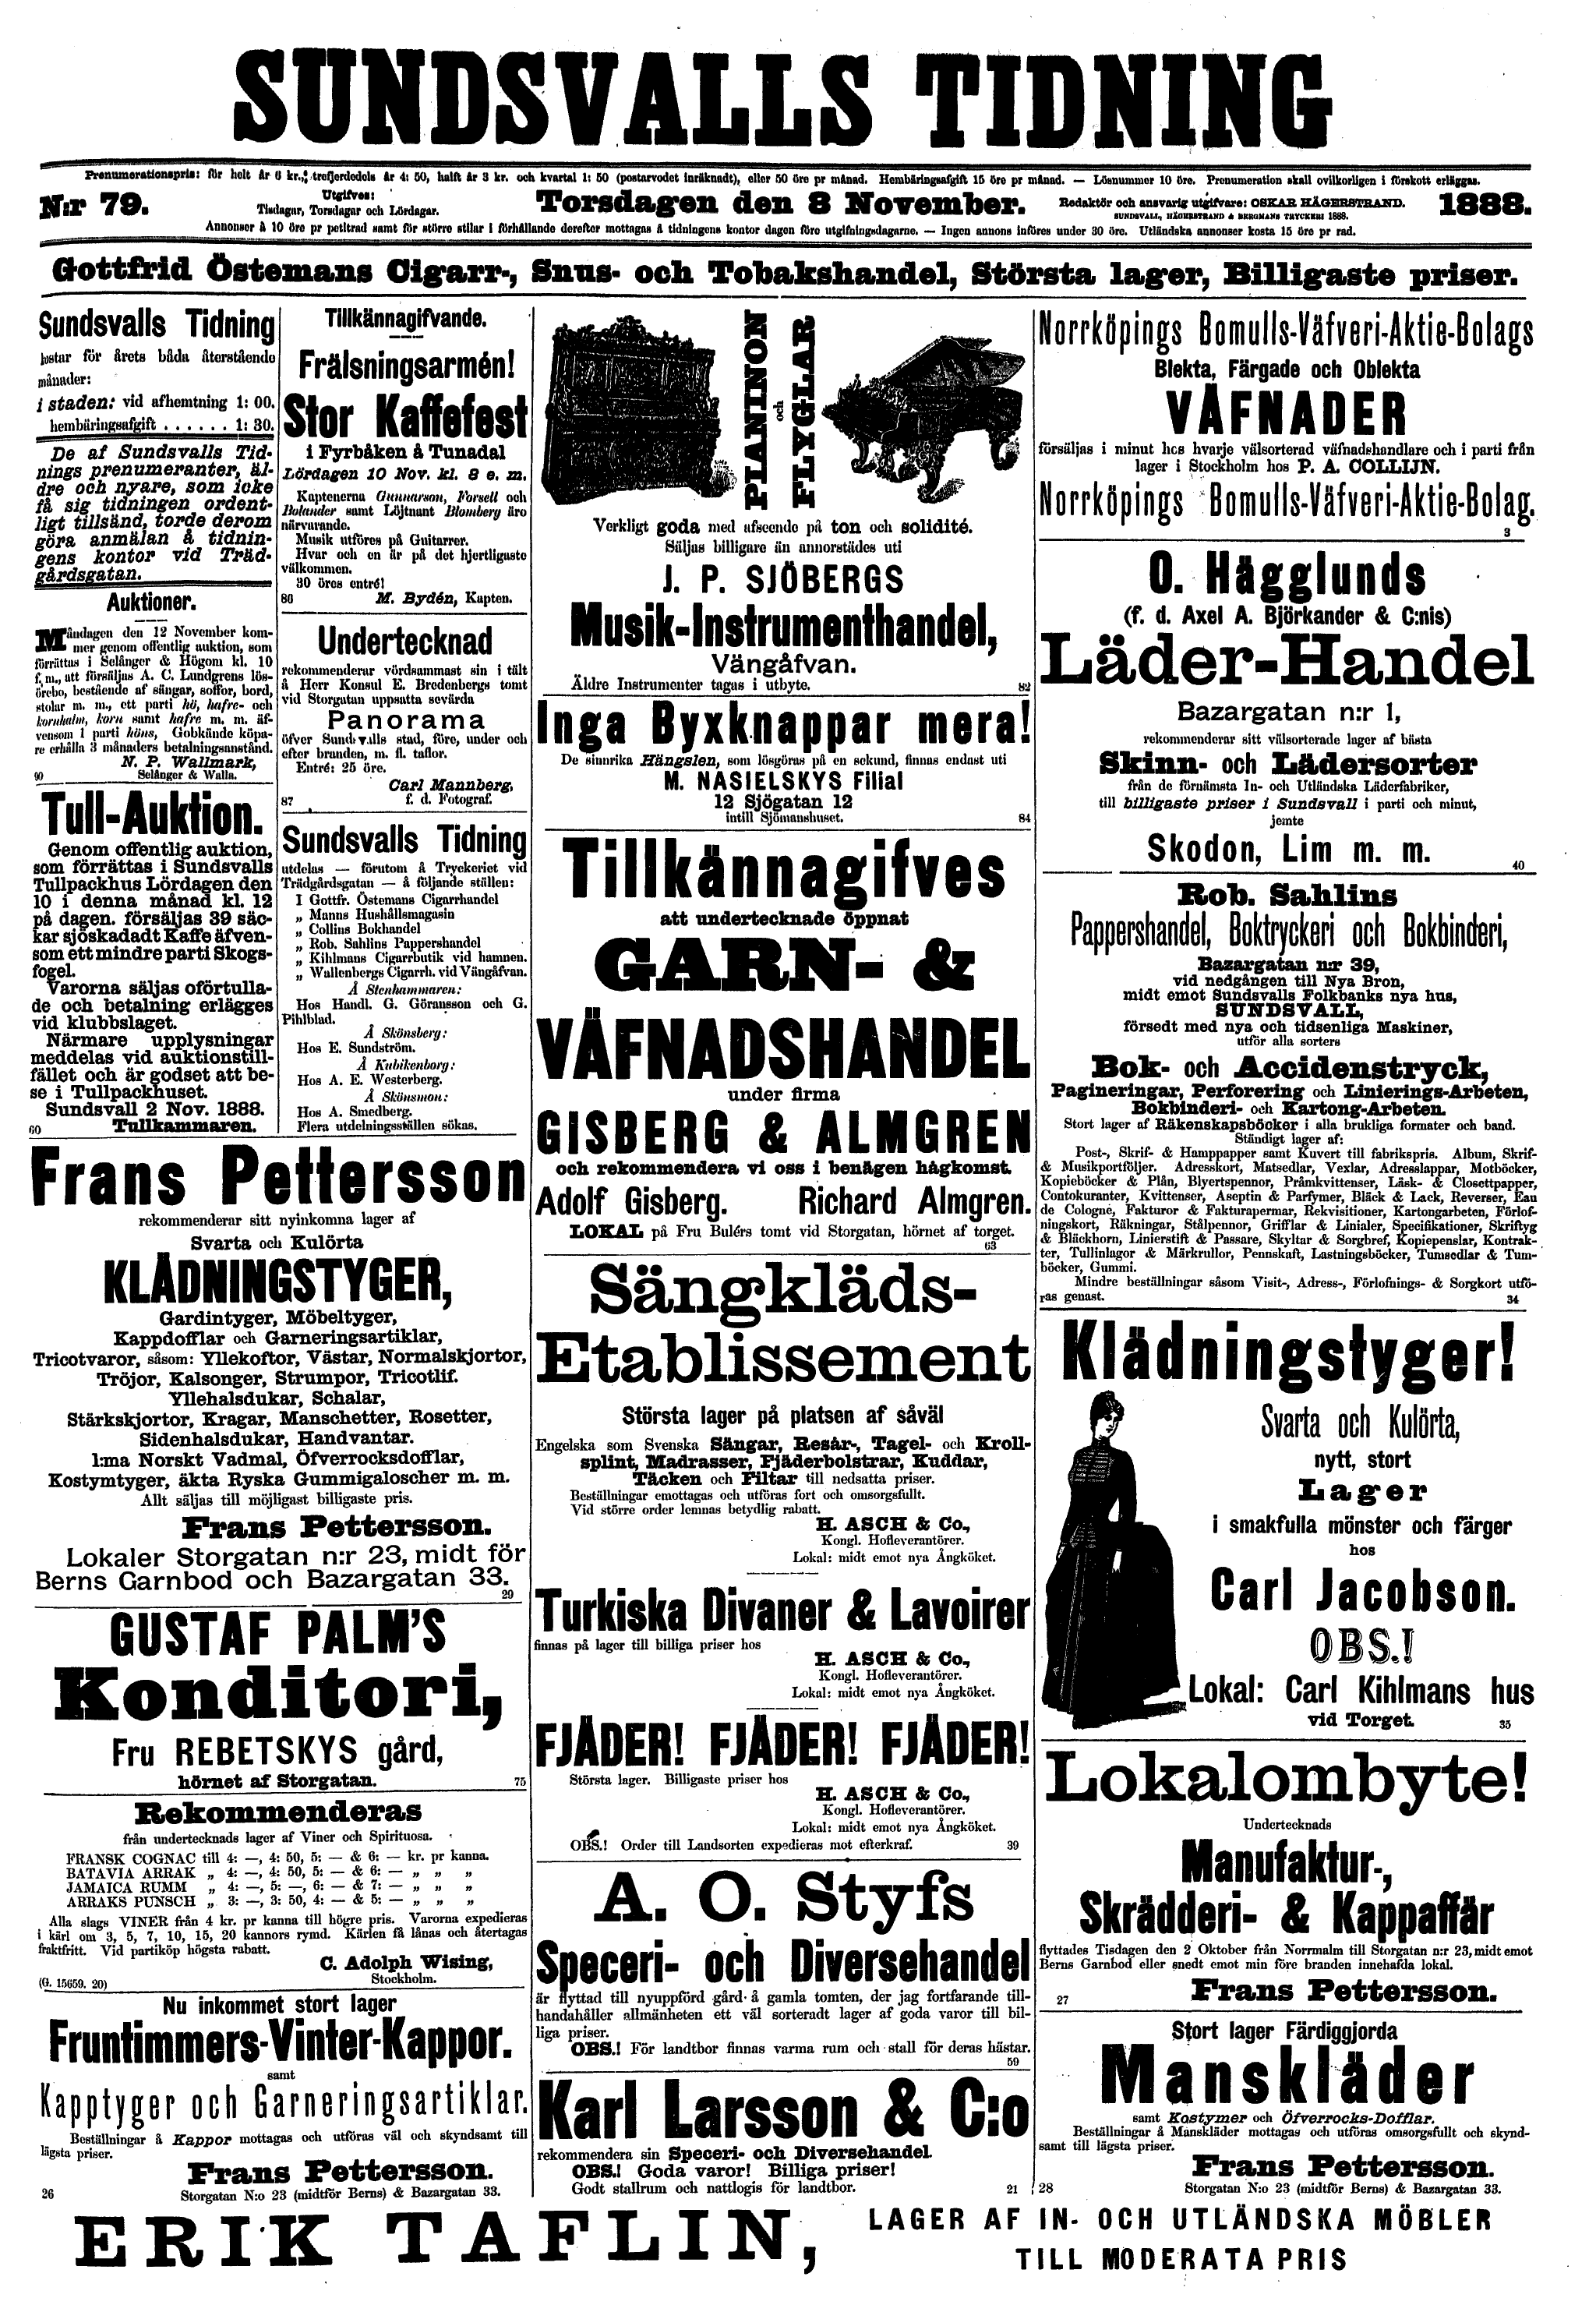 298 (Sundsvalls Tidning / Årgång 1888)